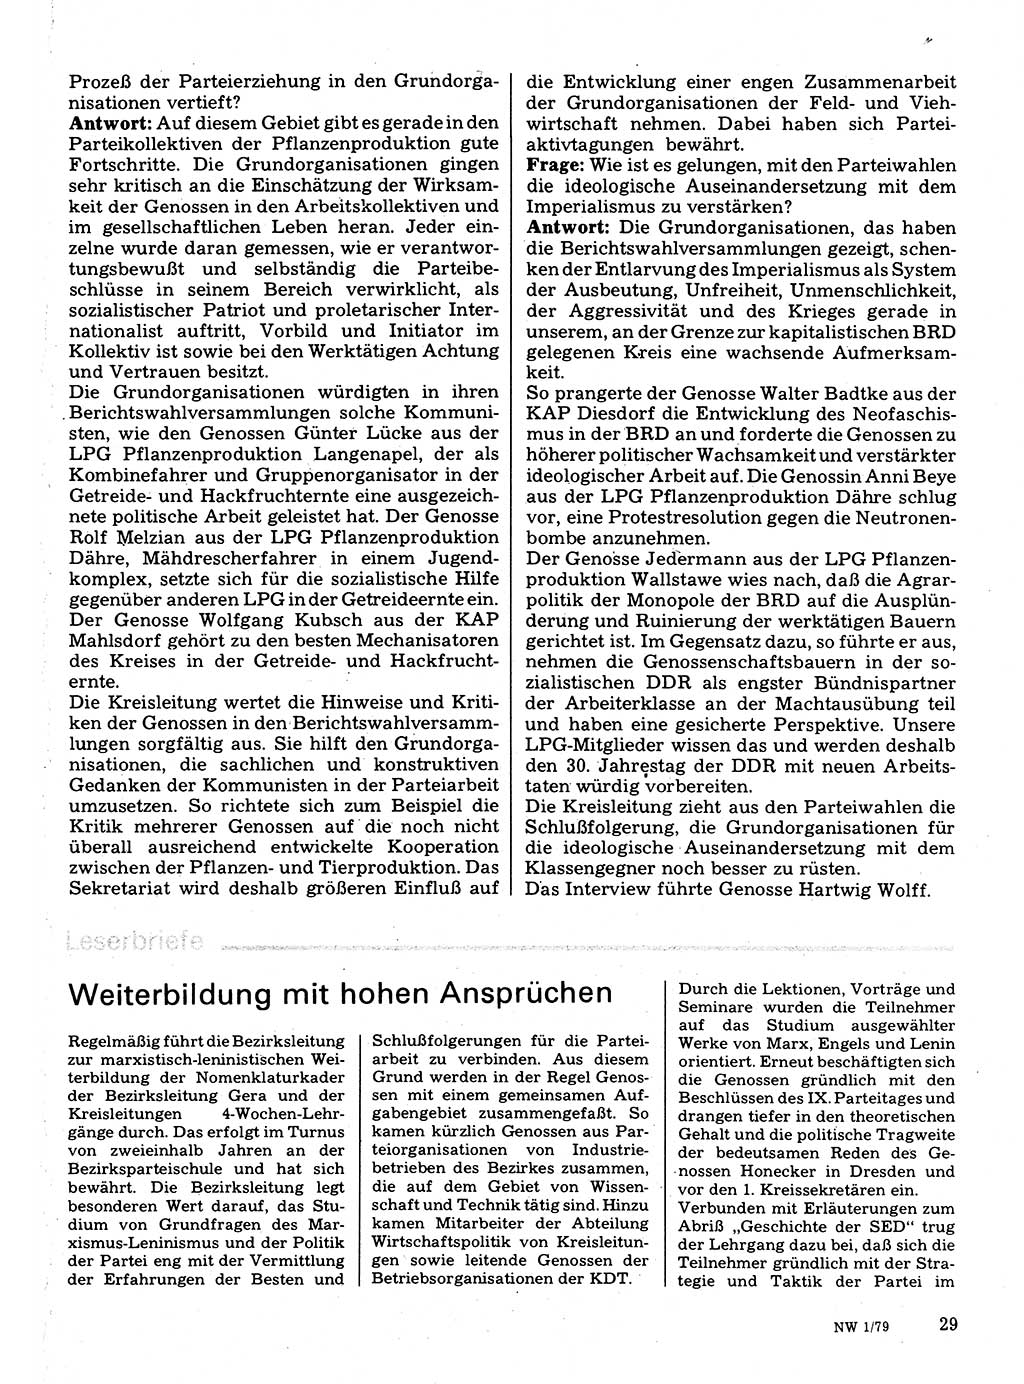 Neuer Weg (NW), Organ des Zentralkomitees (ZK) der SED (Sozialistische Einheitspartei Deutschlands) für Fragen des Parteilebens, 34. Jahrgang [Deutsche Demokratische Republik (DDR)] 1979, Seite 29 (NW ZK SED DDR 1979, S. 29)